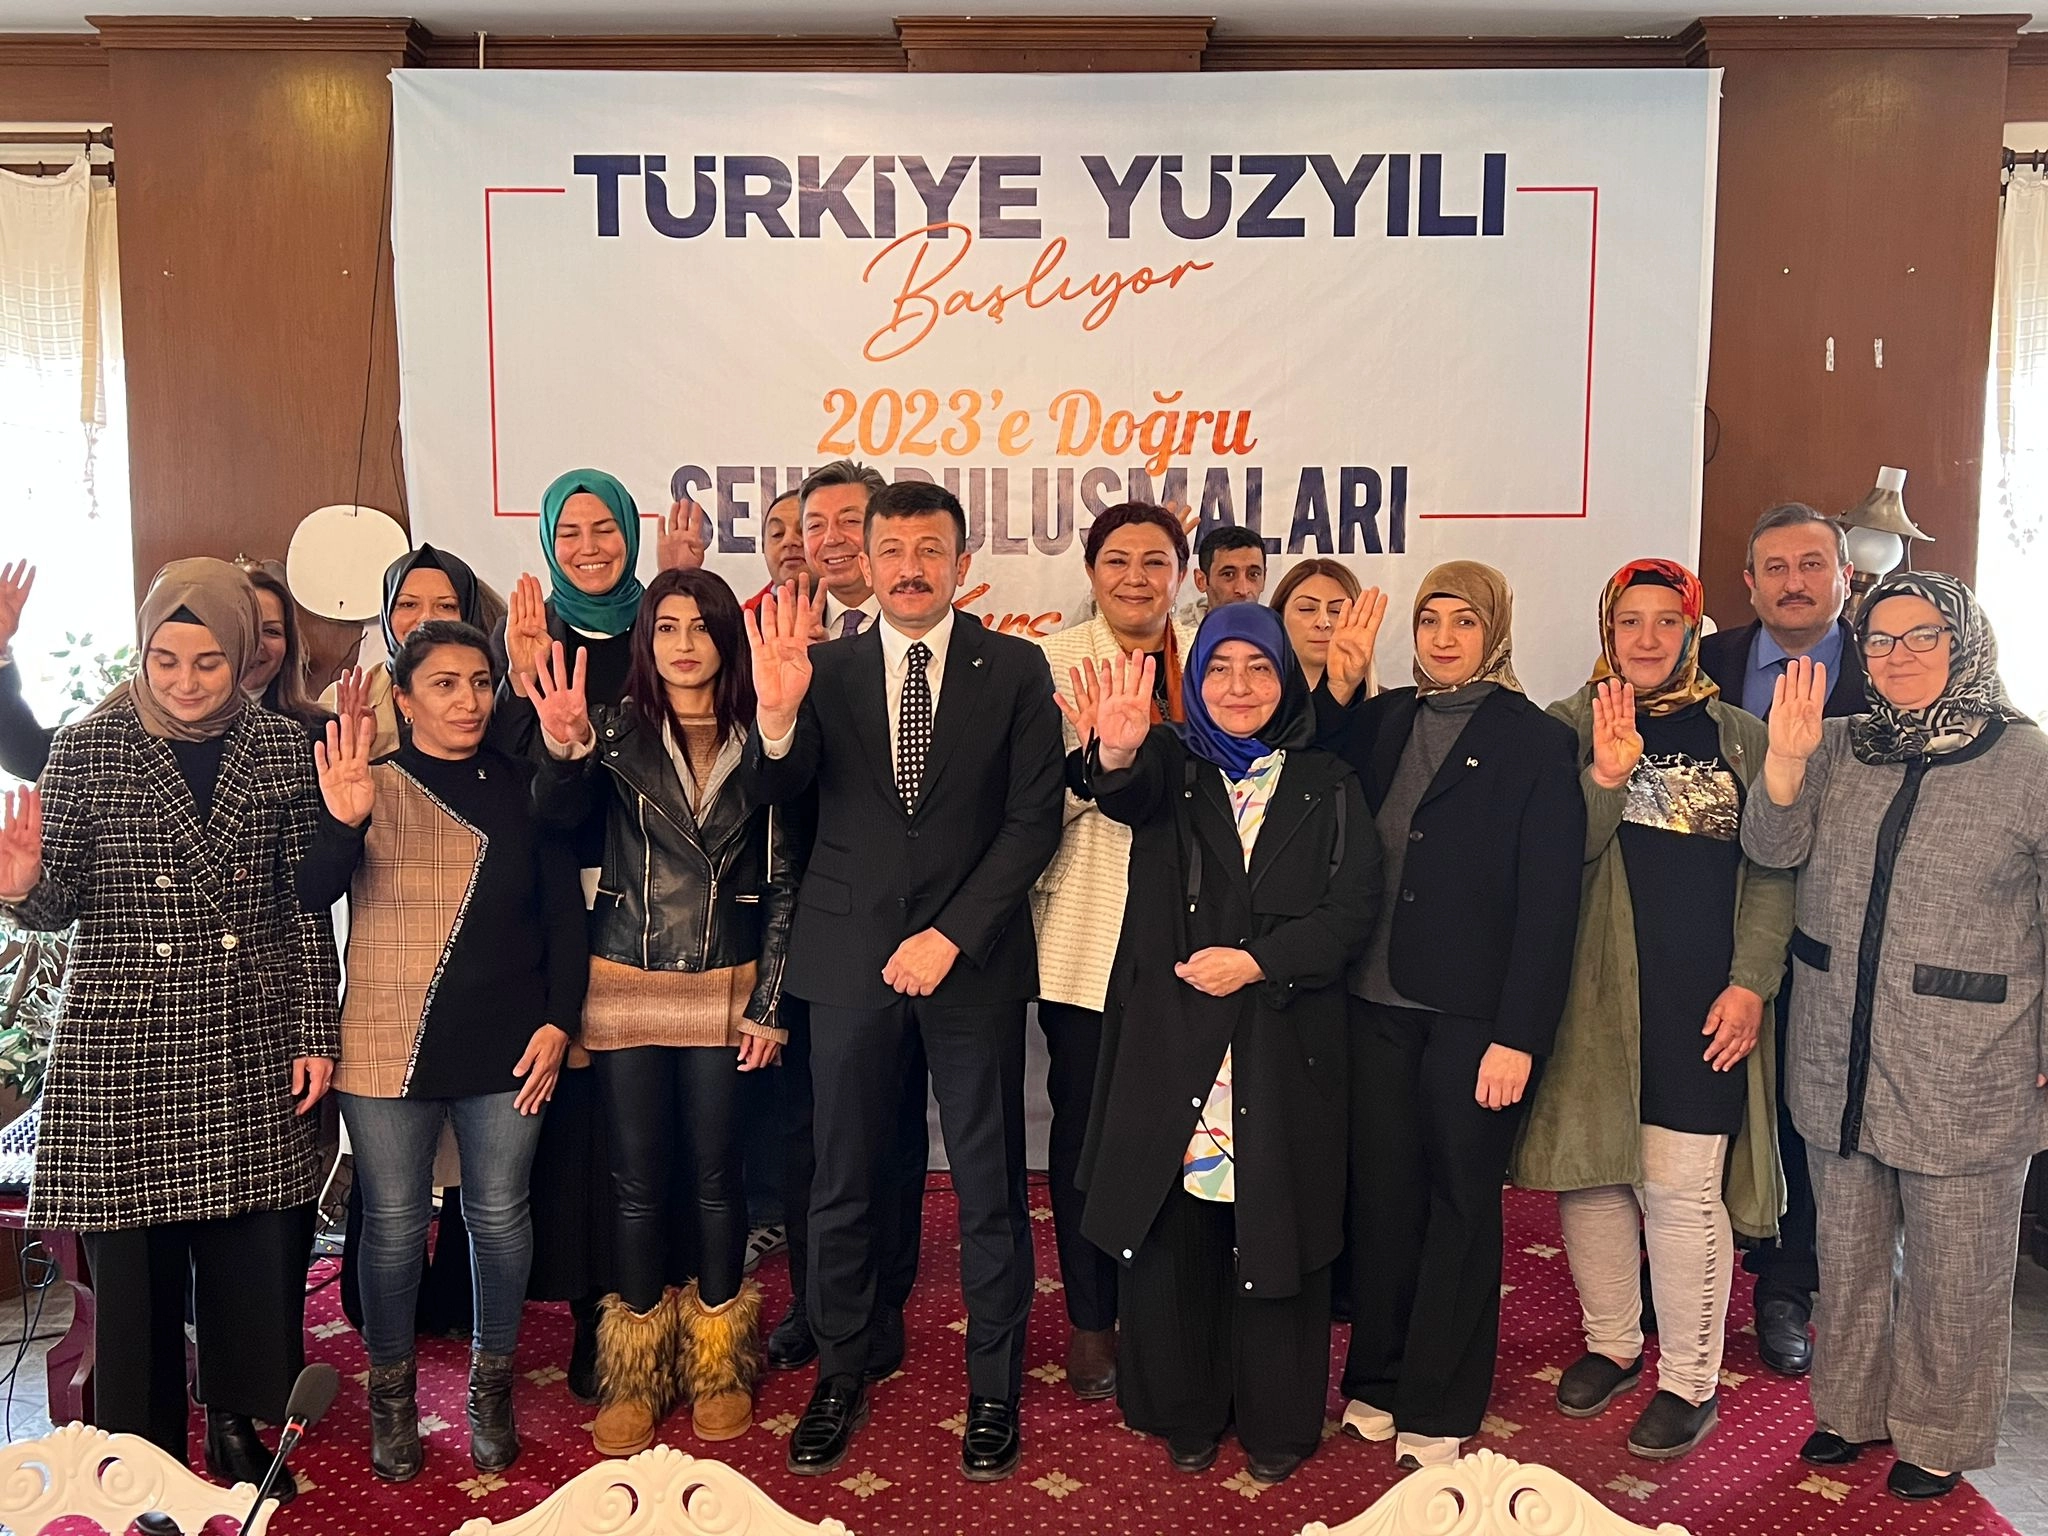 AK Parti Kırşehir İl Başkanı Seher Ünsal:  “2023 seçimlerine doludizgin ilerliyoruz”